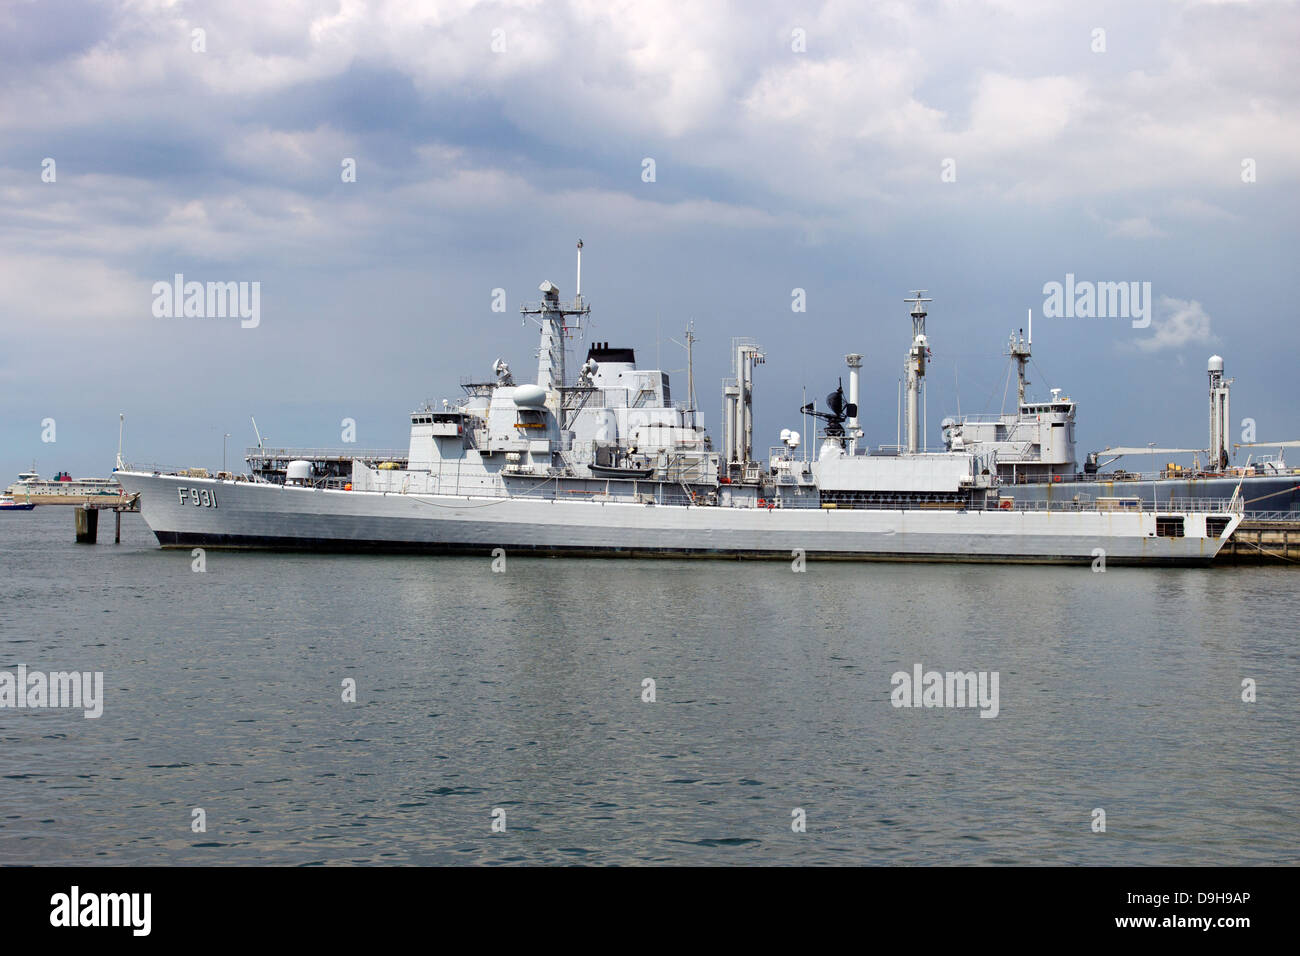 Royal Netherlands Navy frigate Foto Stock